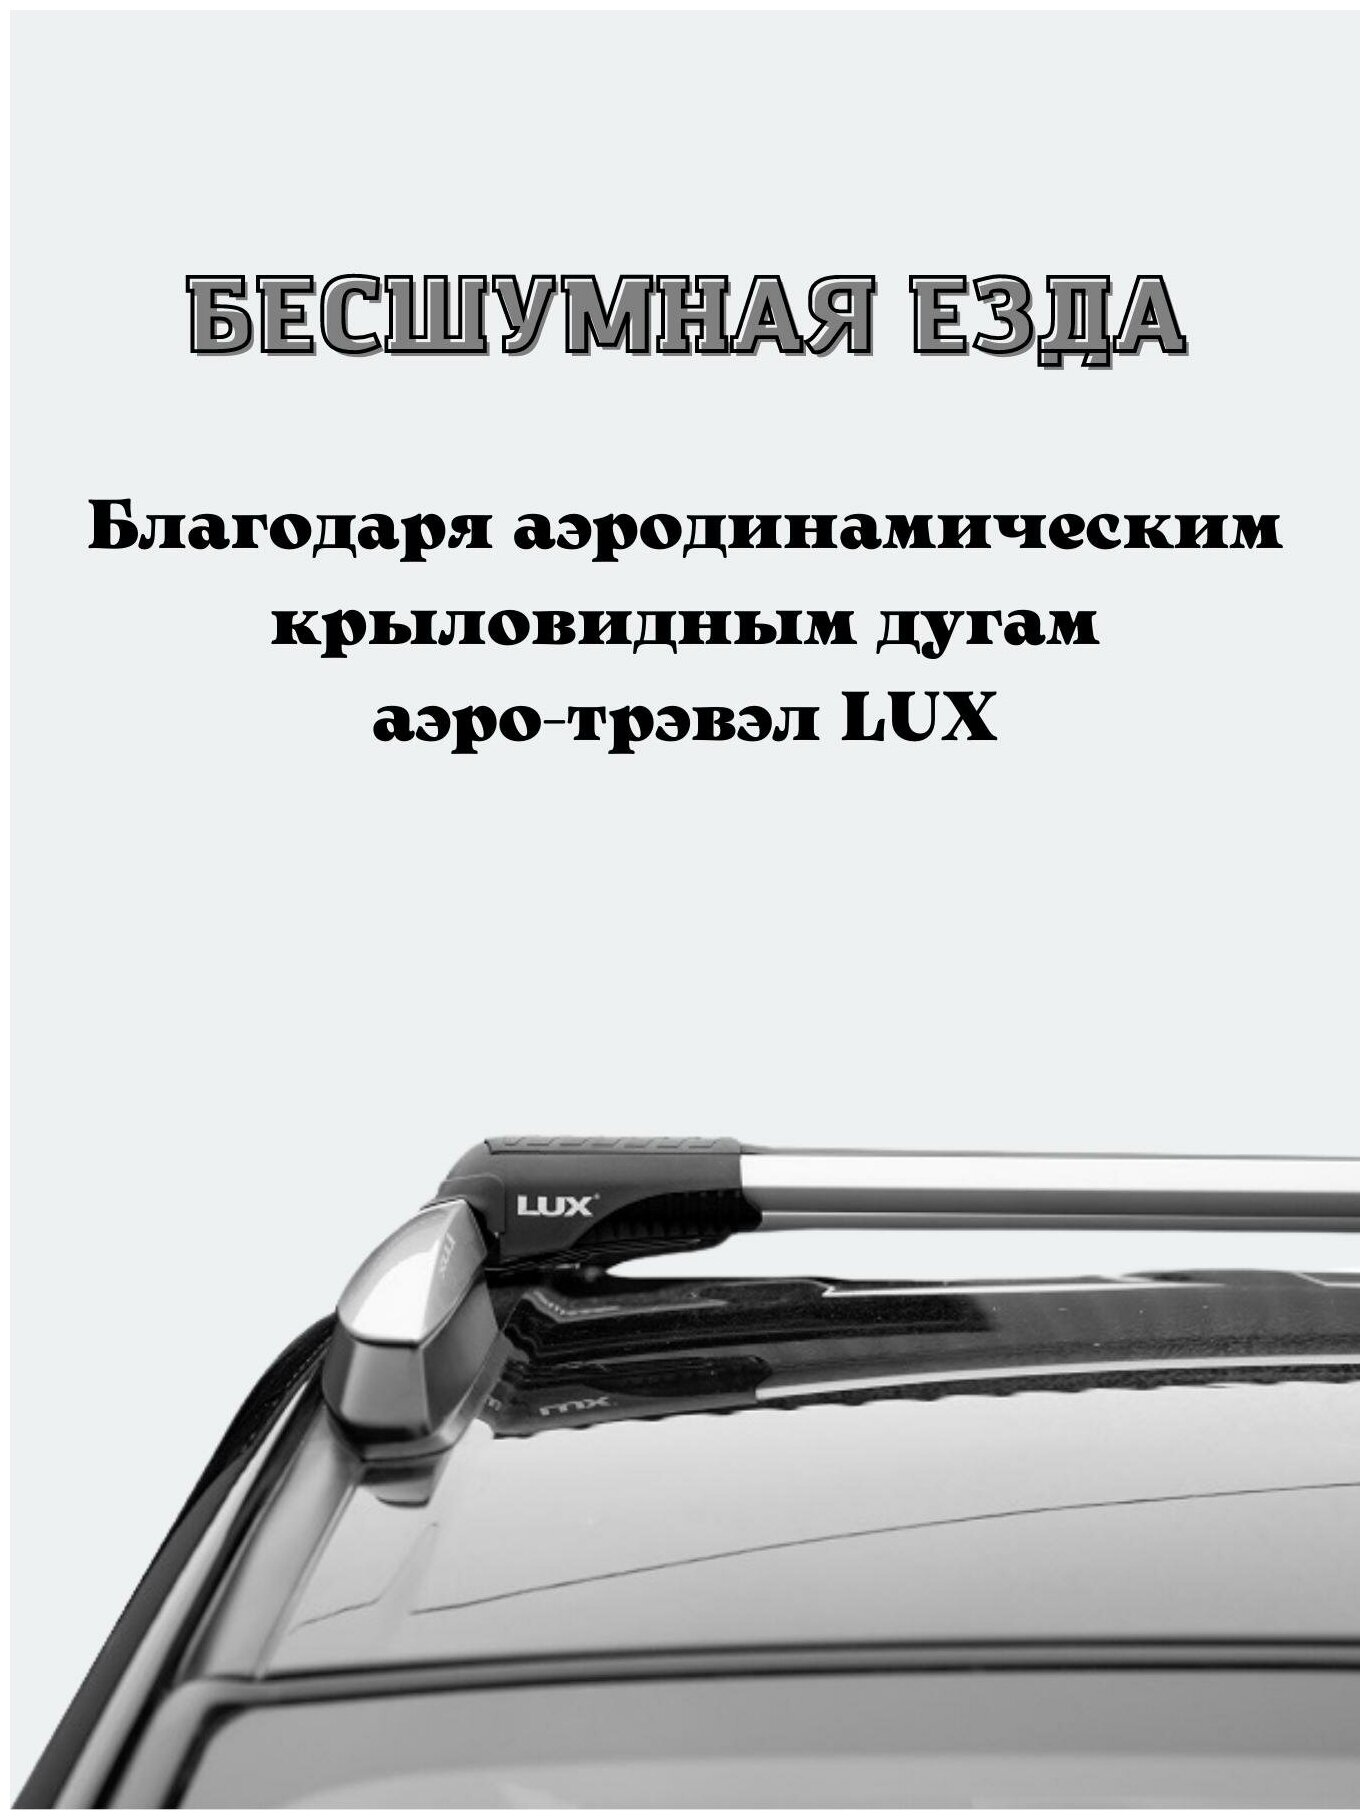 Багажник на рейлинги для Ssang Yong Rexton 2007-2012 LUX L53